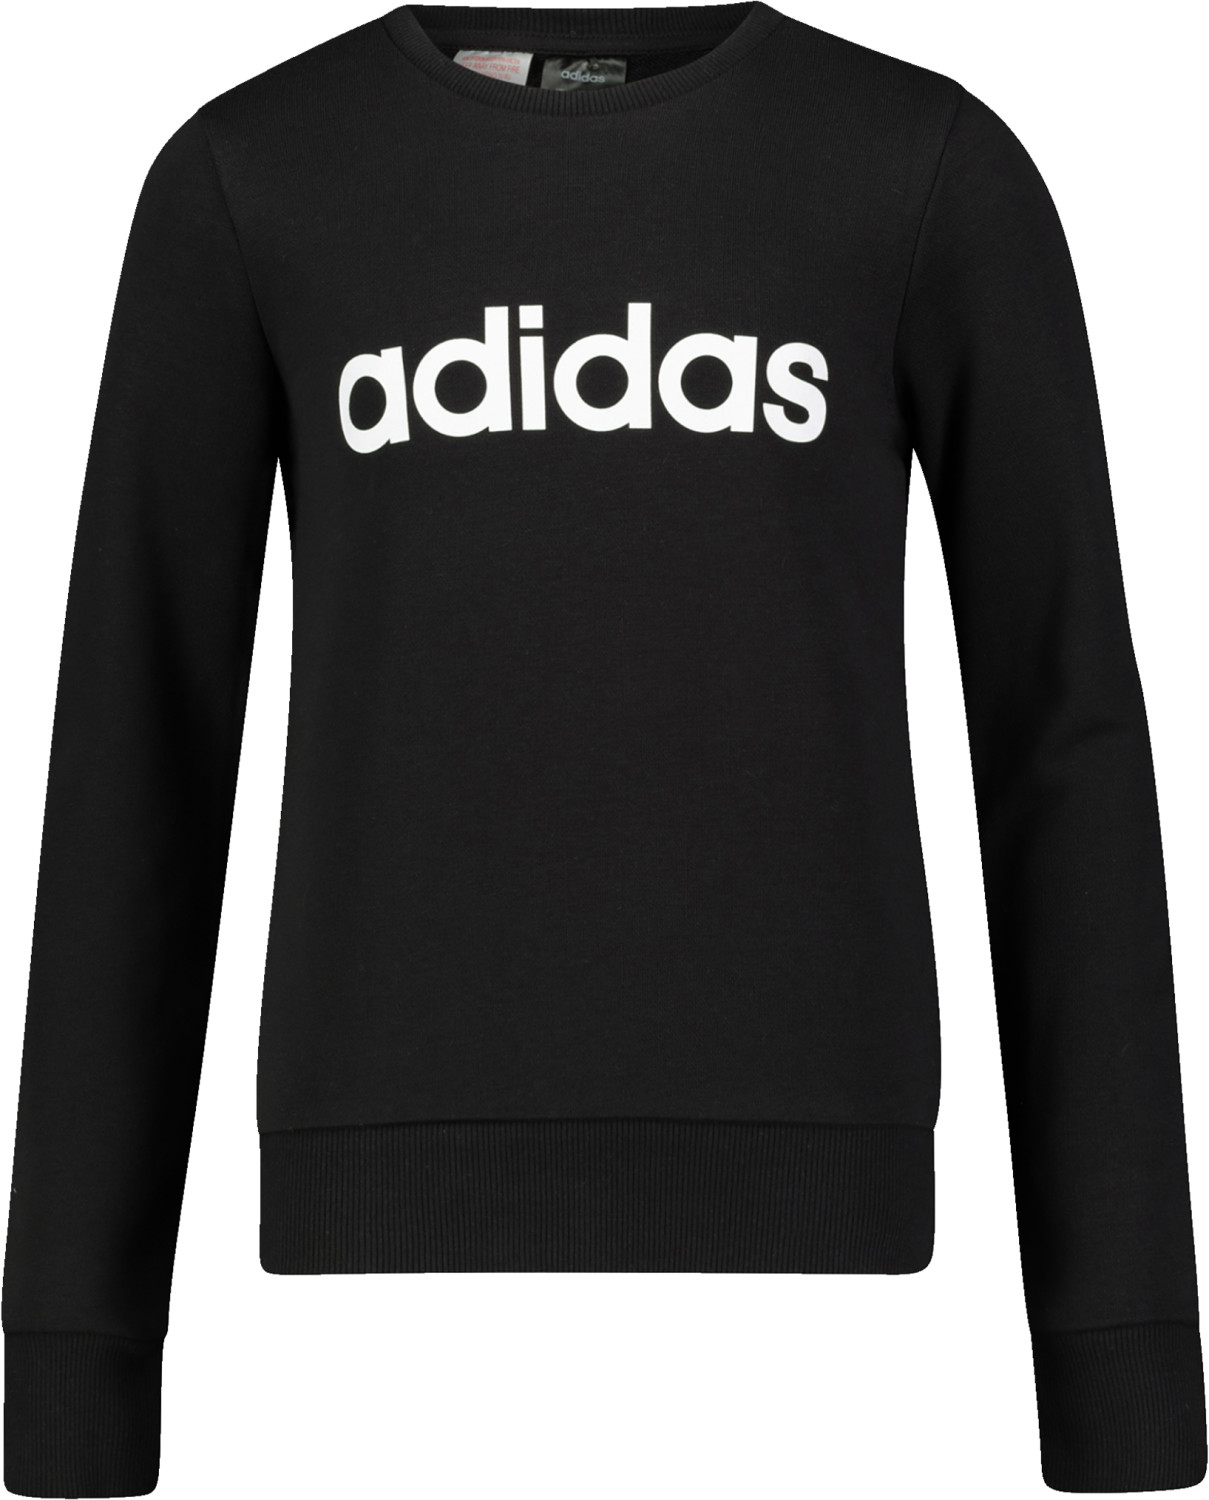 Adidas Linear Sweatshirt (EH6157) black/white